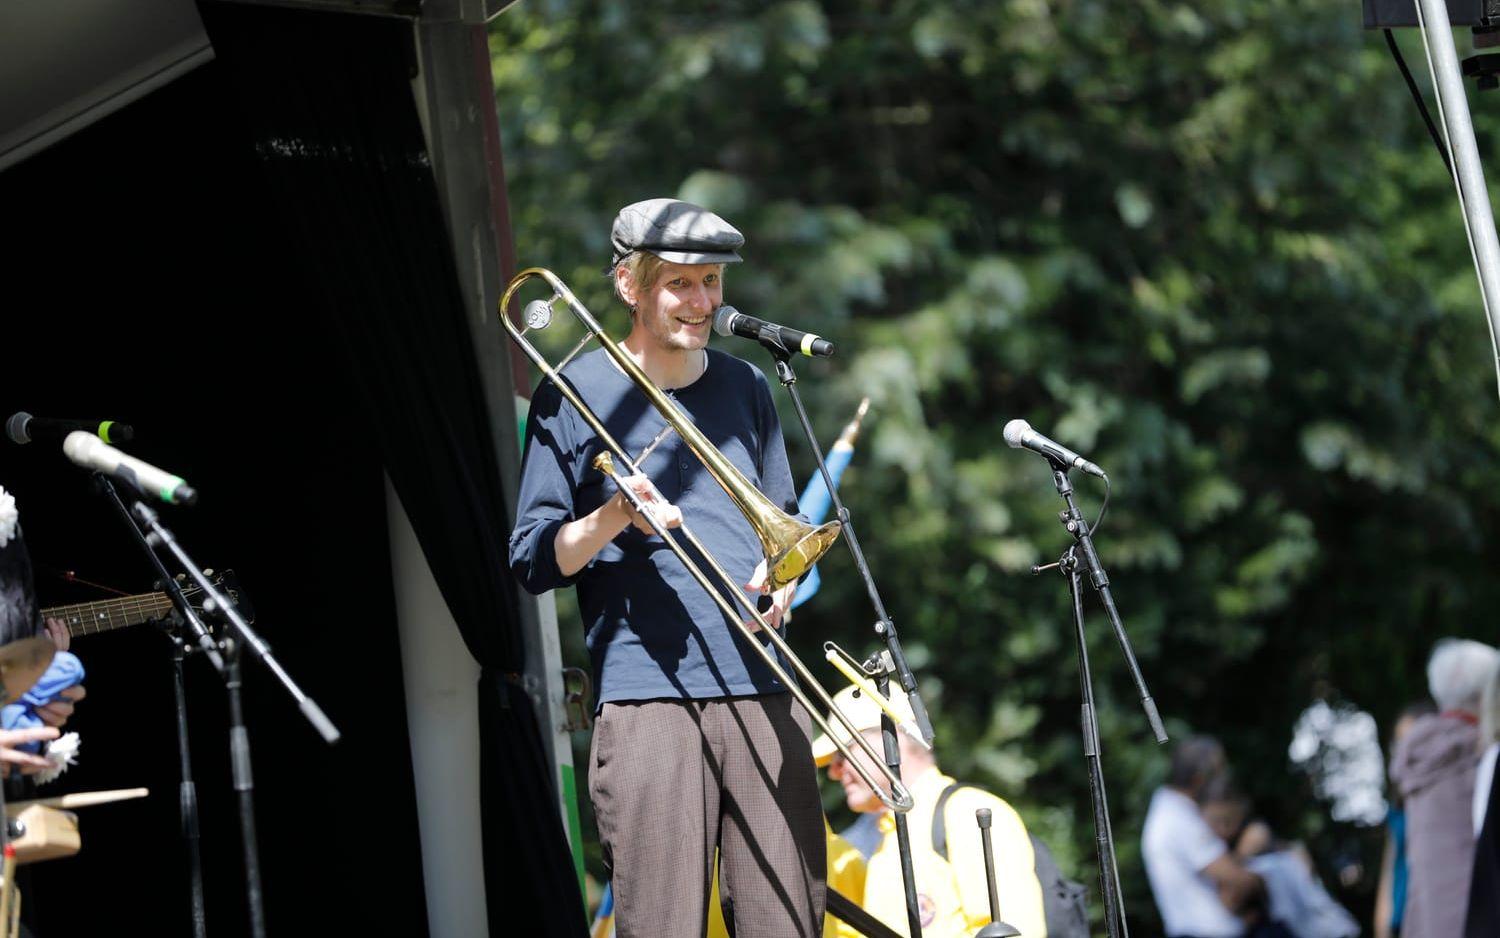 Kristoffer Alehed steppade och spelade trombon.